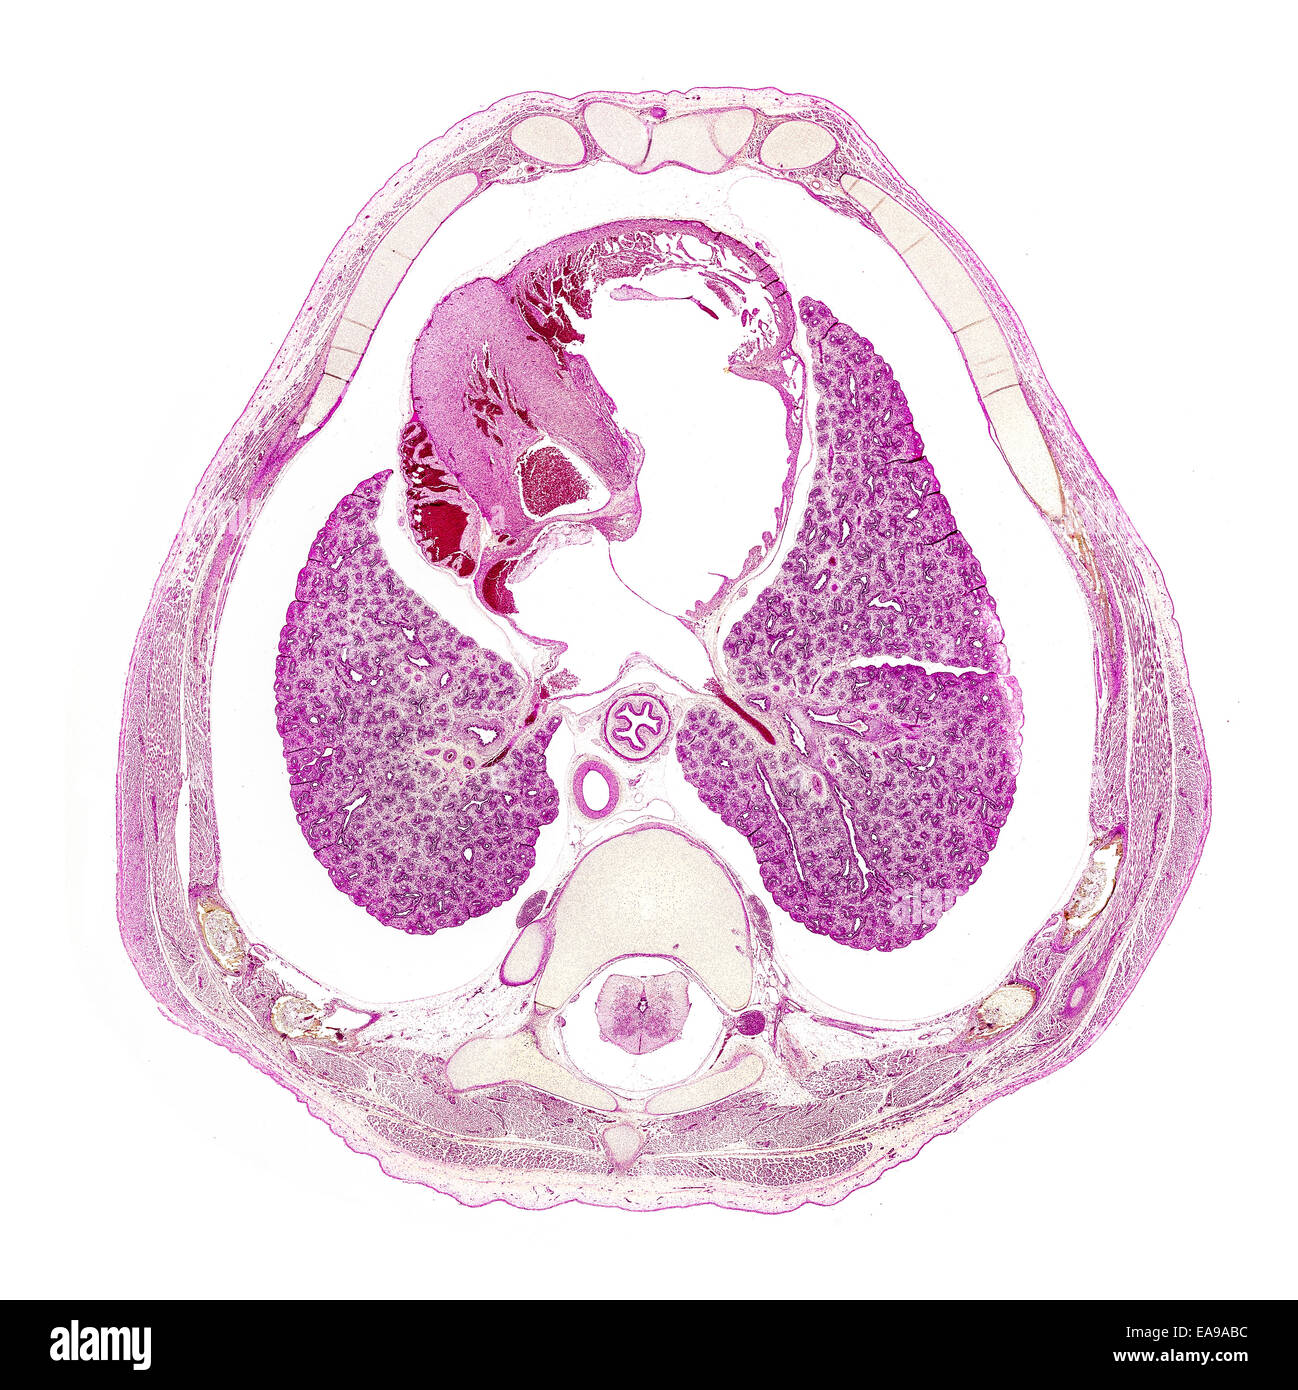 Foetus humain thorax section Vitrail montrant structures générales Banque D'Images